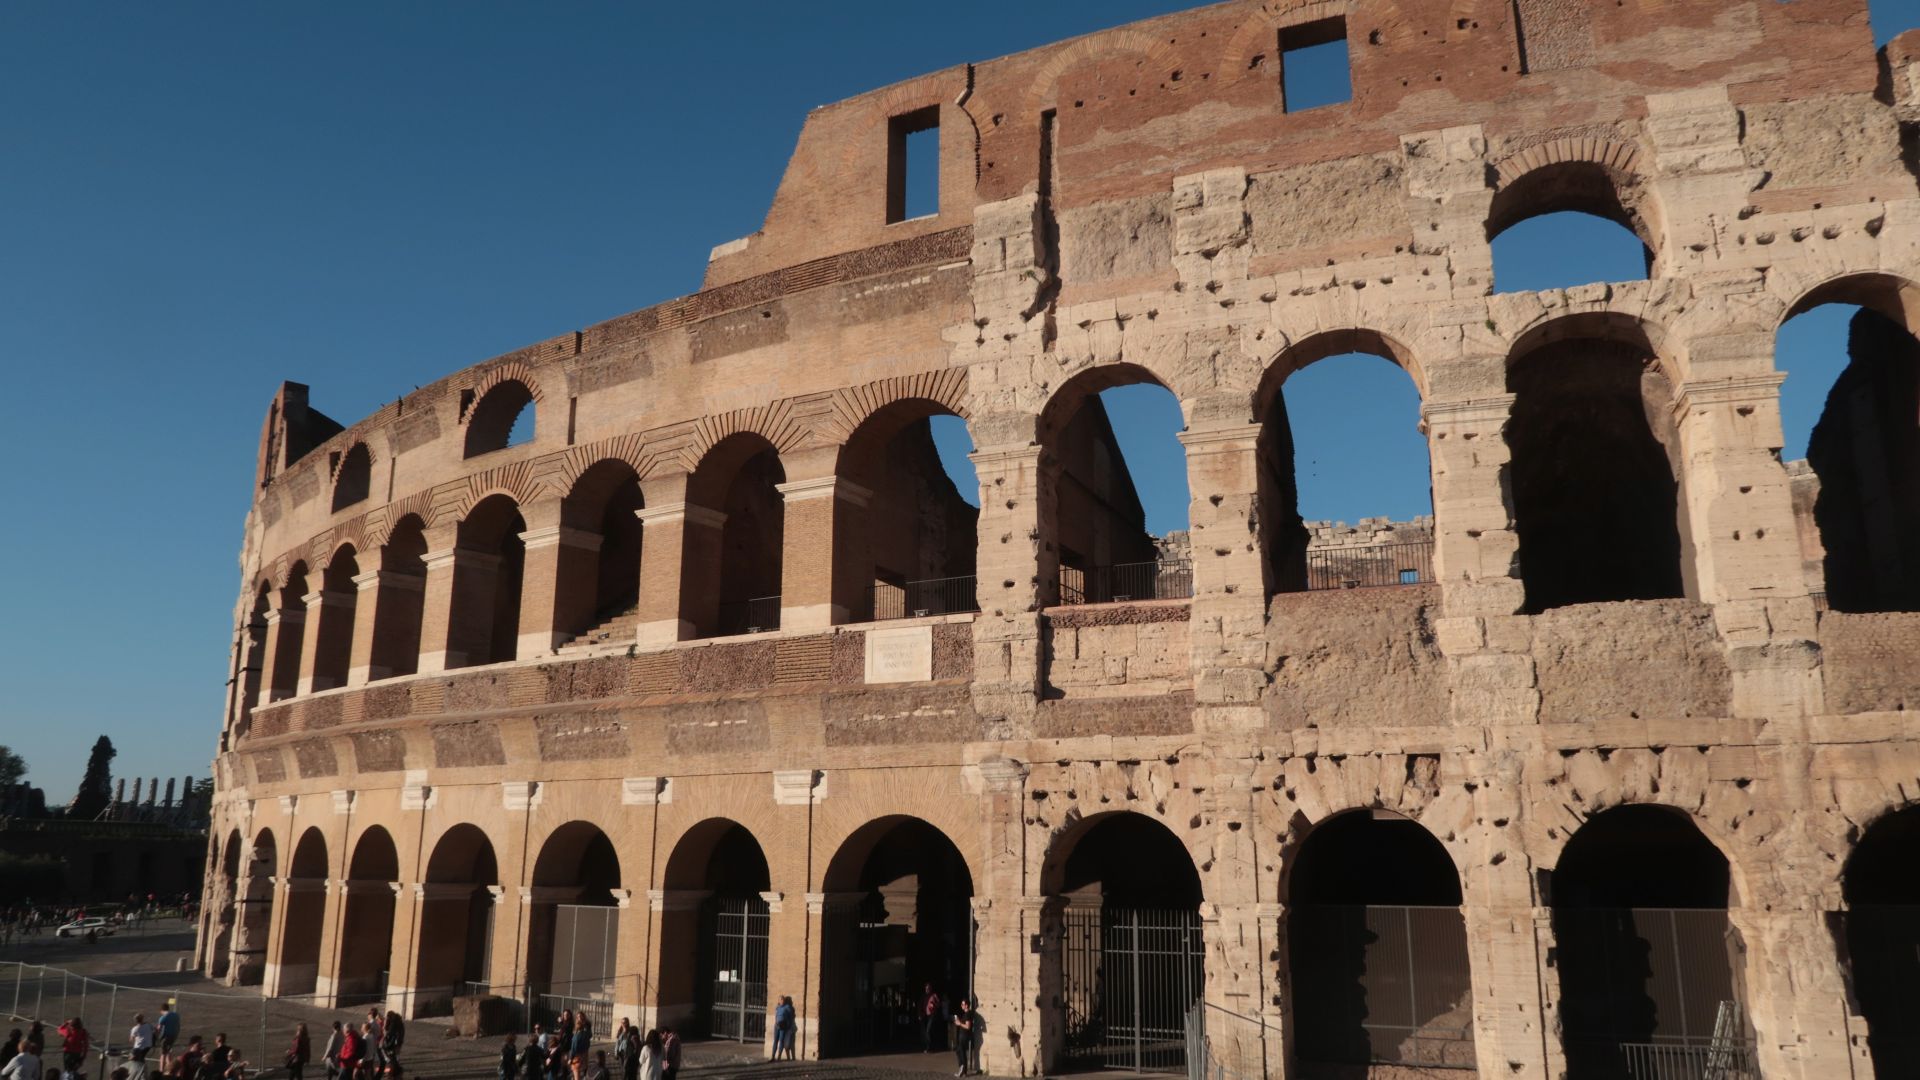  Кирилицата оживява в Рим с уникално 3D mapping шоу